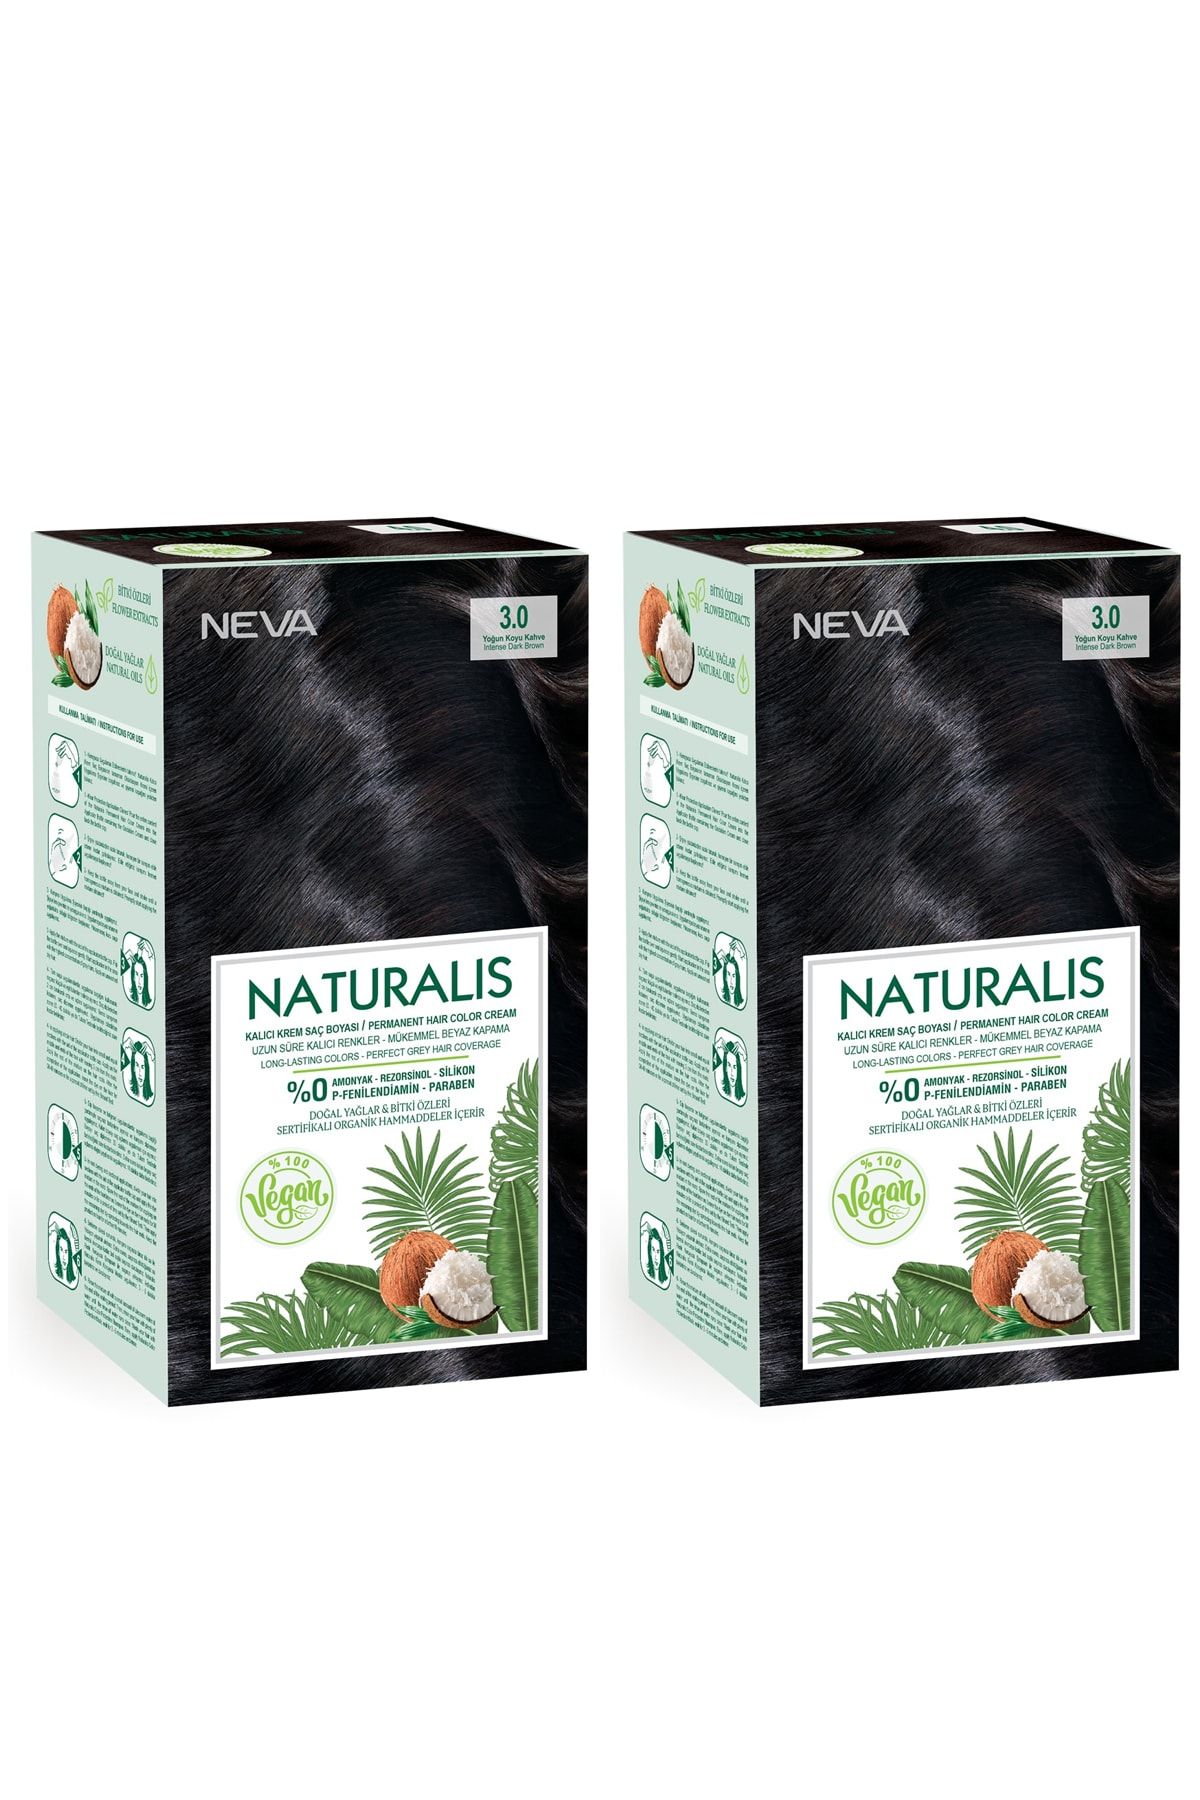 NEVA KOZMETİK Naturalis Saç Boyası 3.0 Yoğun Koyu Kahve %100 Vegan 2'li Set